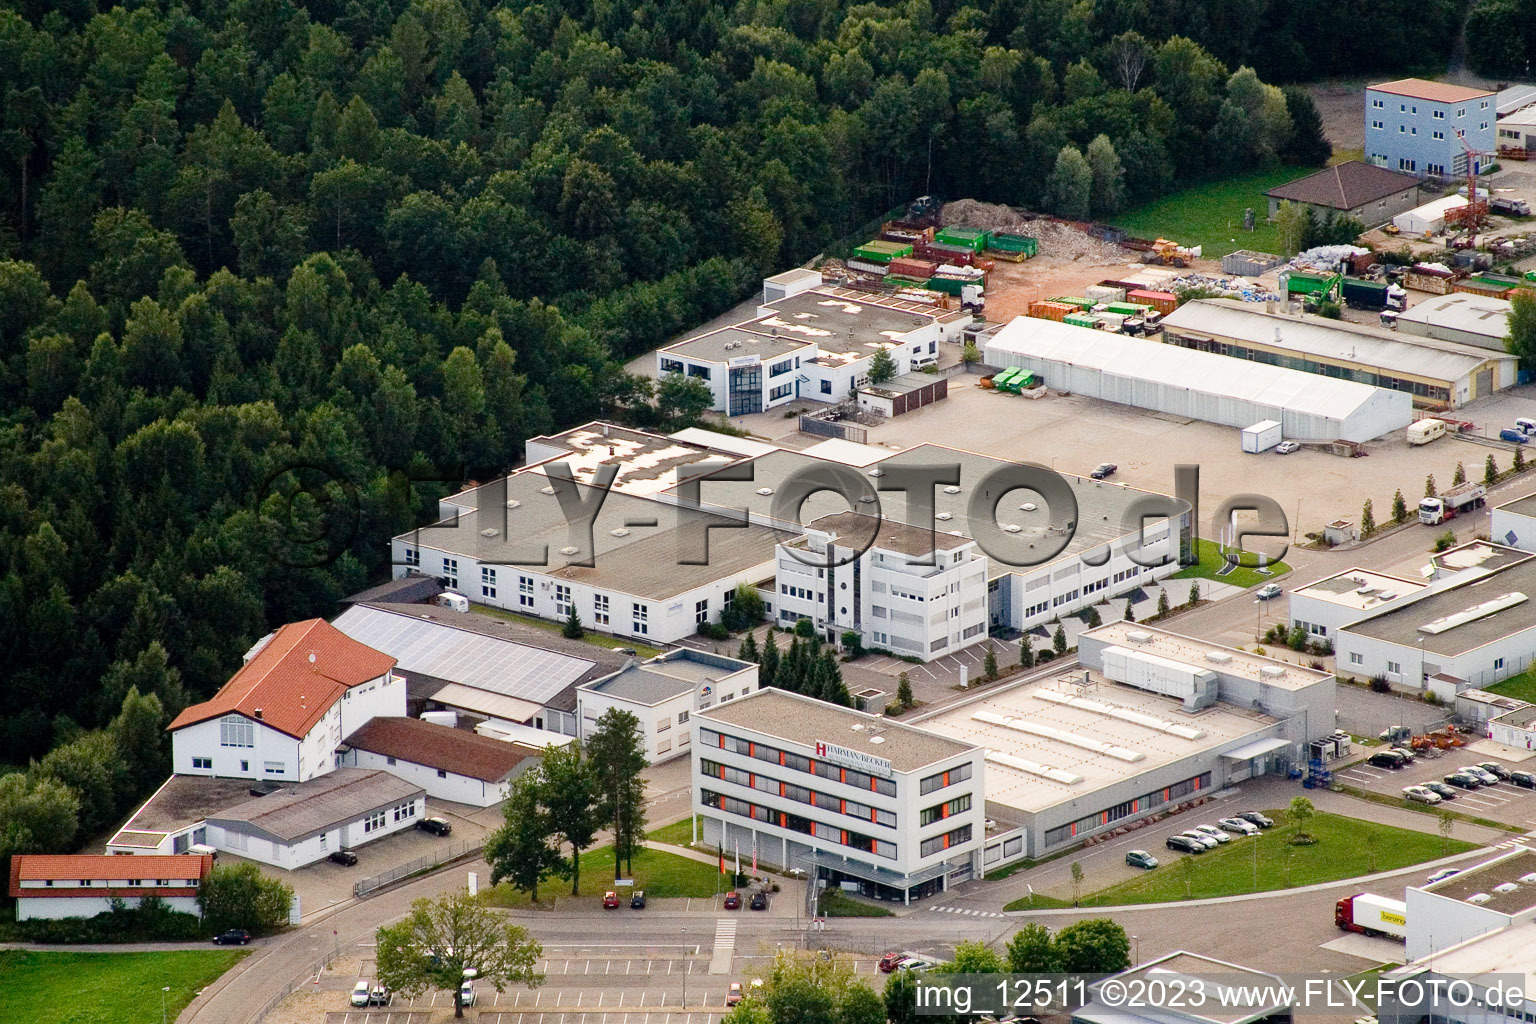 Ittersbach, zone industrielle à le quartier Im Stockmädle in Karlsbad dans le département Bade-Wurtemberg, Allemagne du point de vue du drone